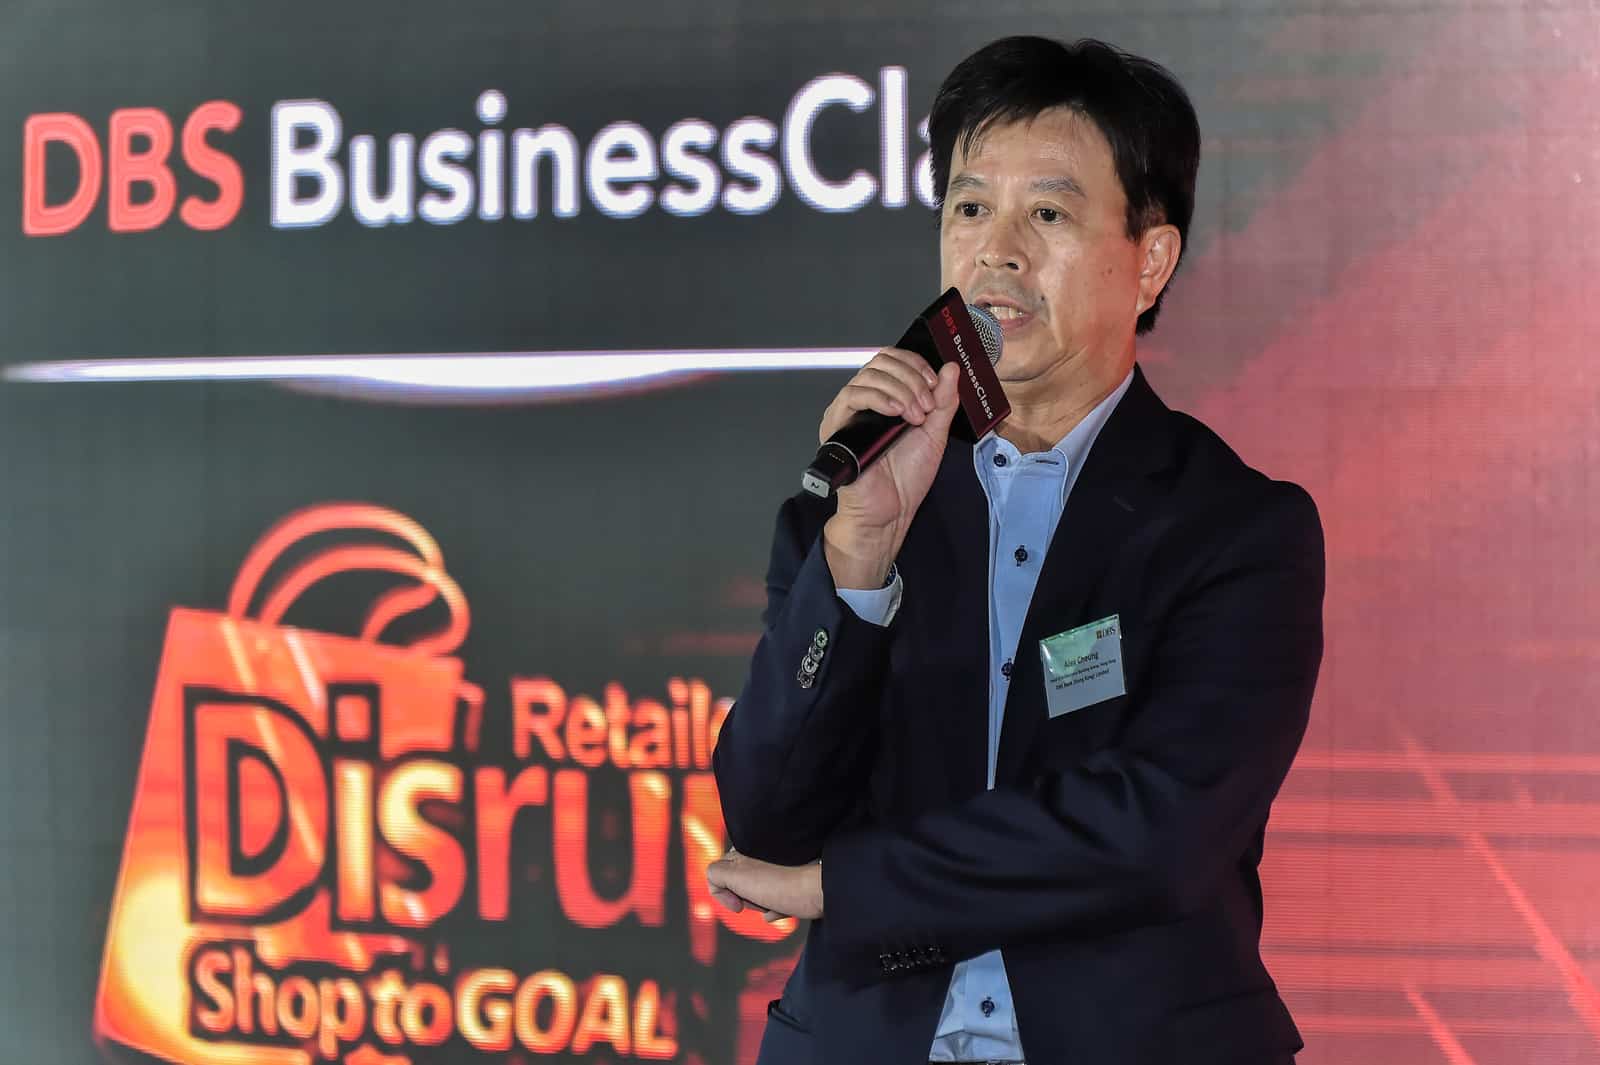 星展銀行（香港）董事總經理兼企業及機構銀行總監張建生 （Alex Cheung）先生為 DBS BusinessClass 零售業創新科技活動主持開幕演講。